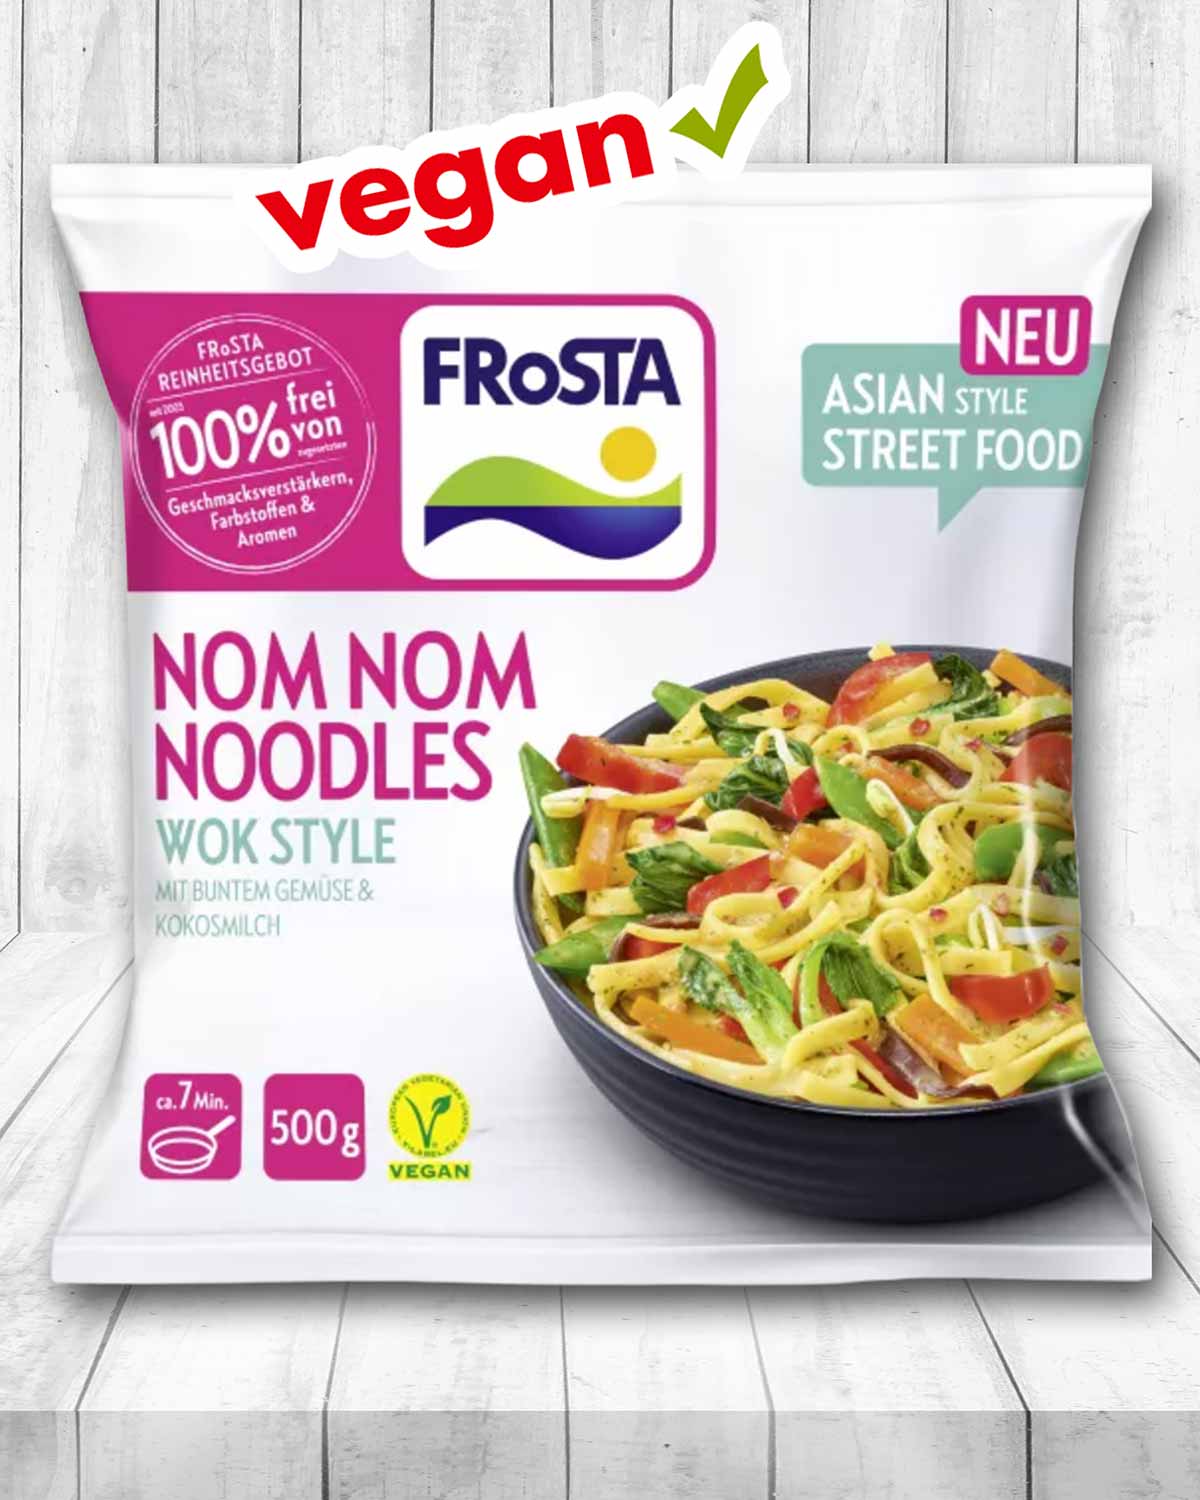 Vegane Nom Nom Noodles von Frosta